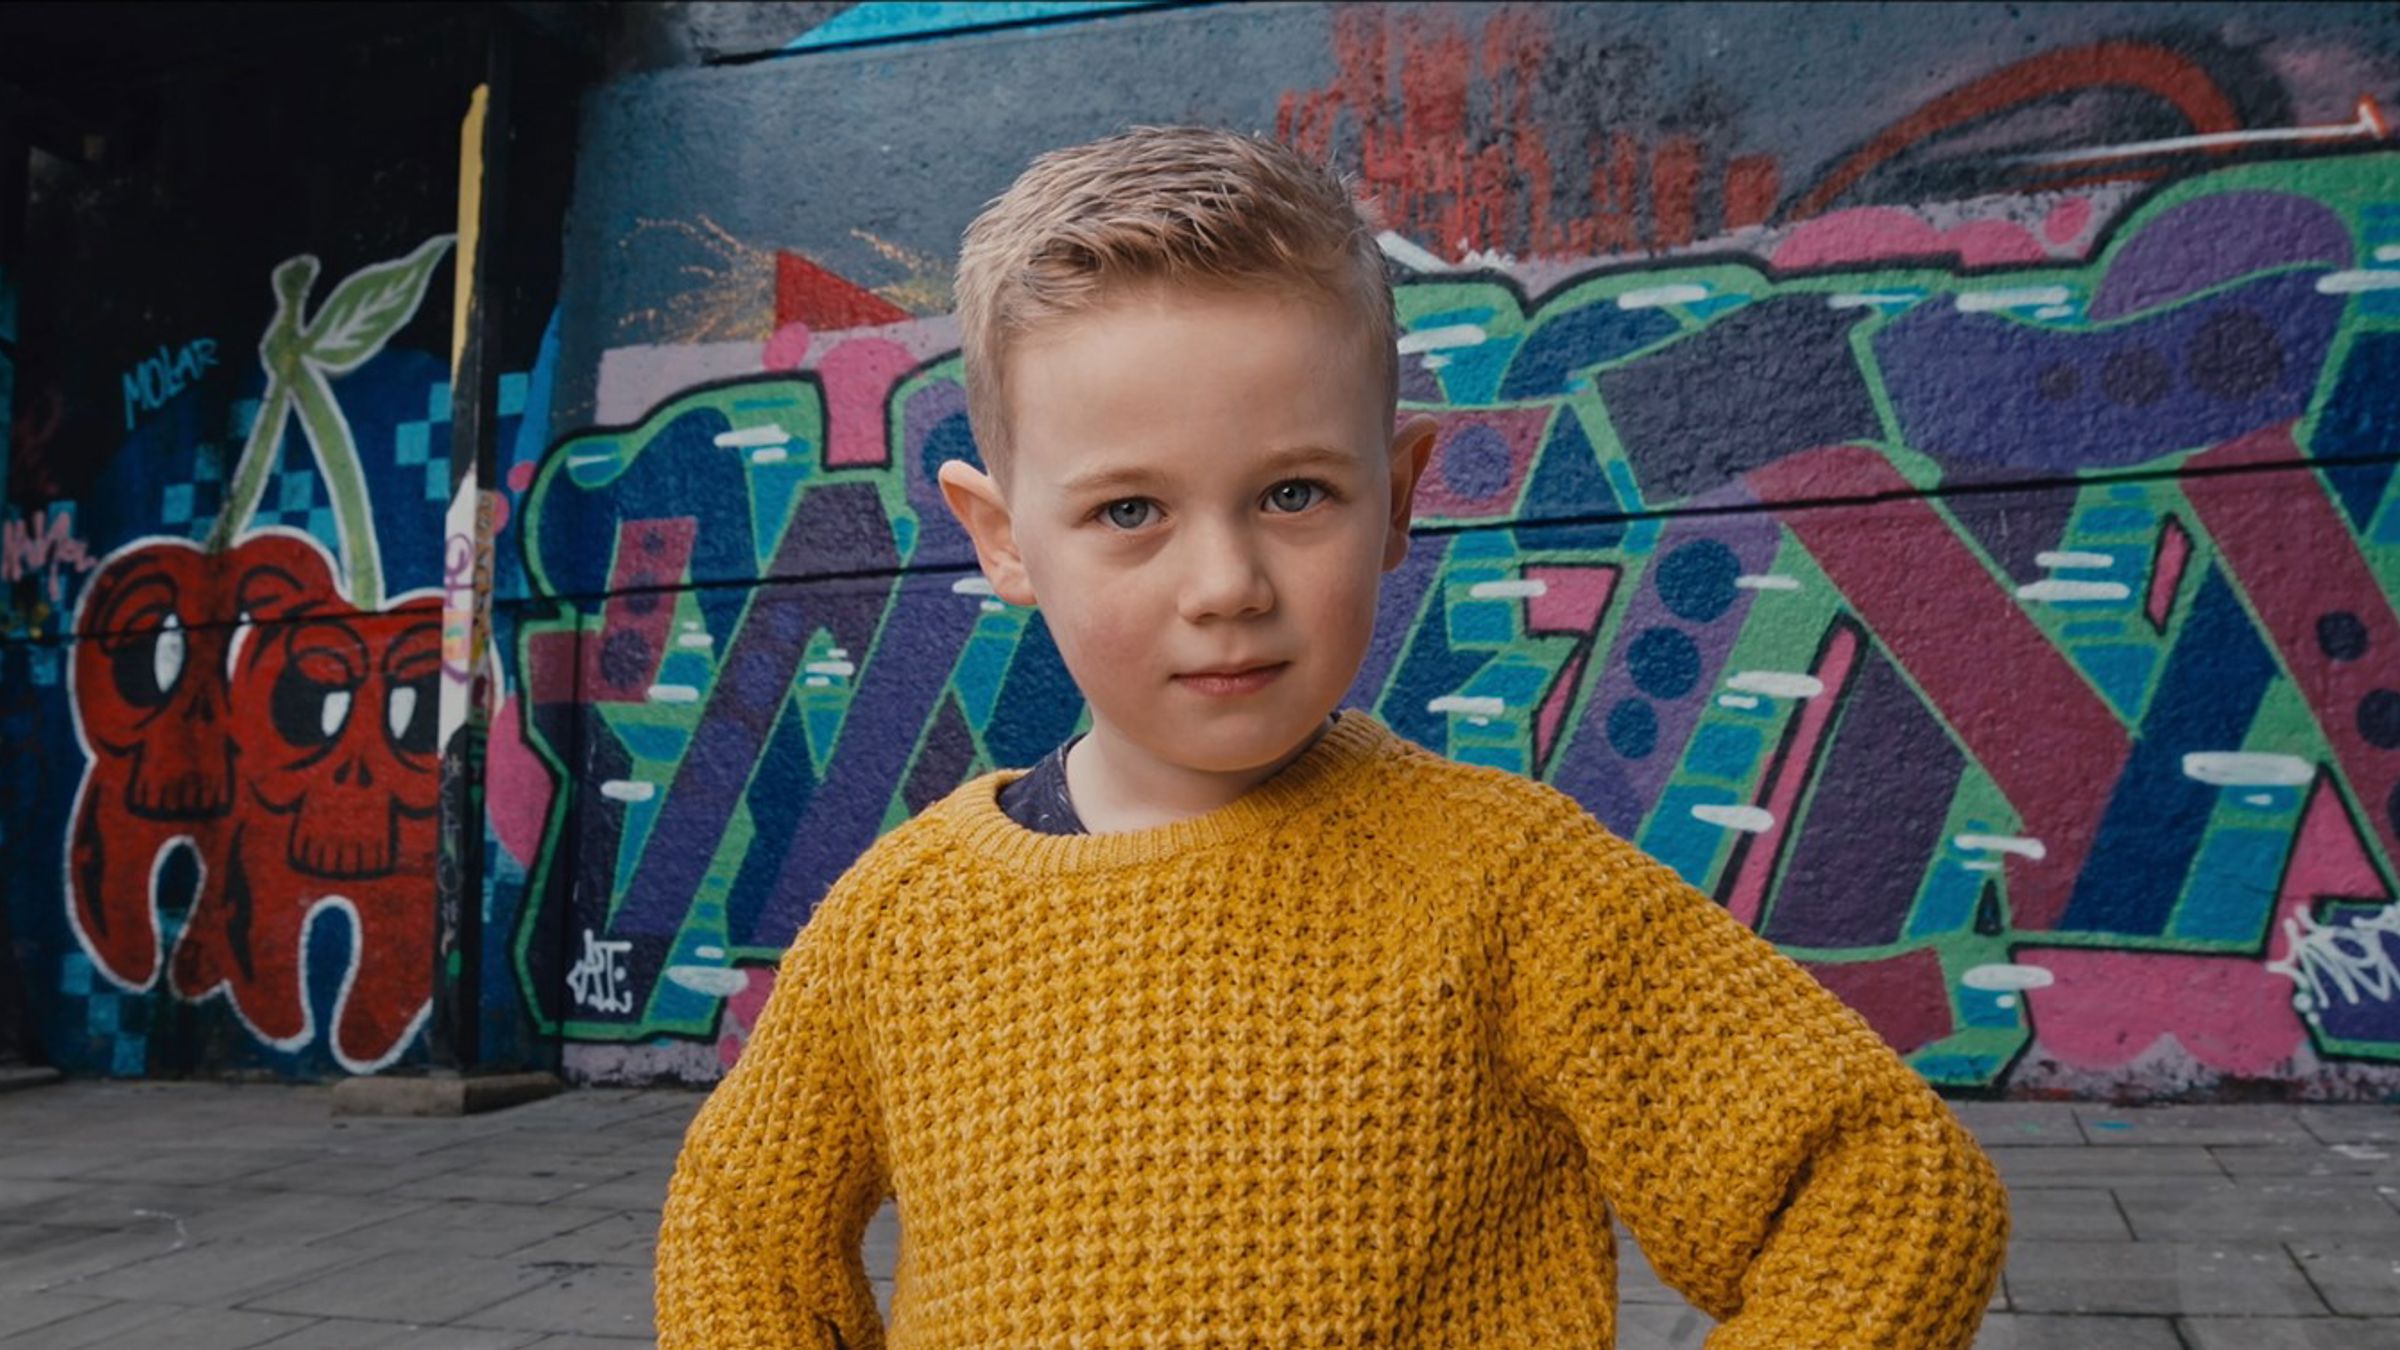 Boy in orange sweater in front of graffiti wall